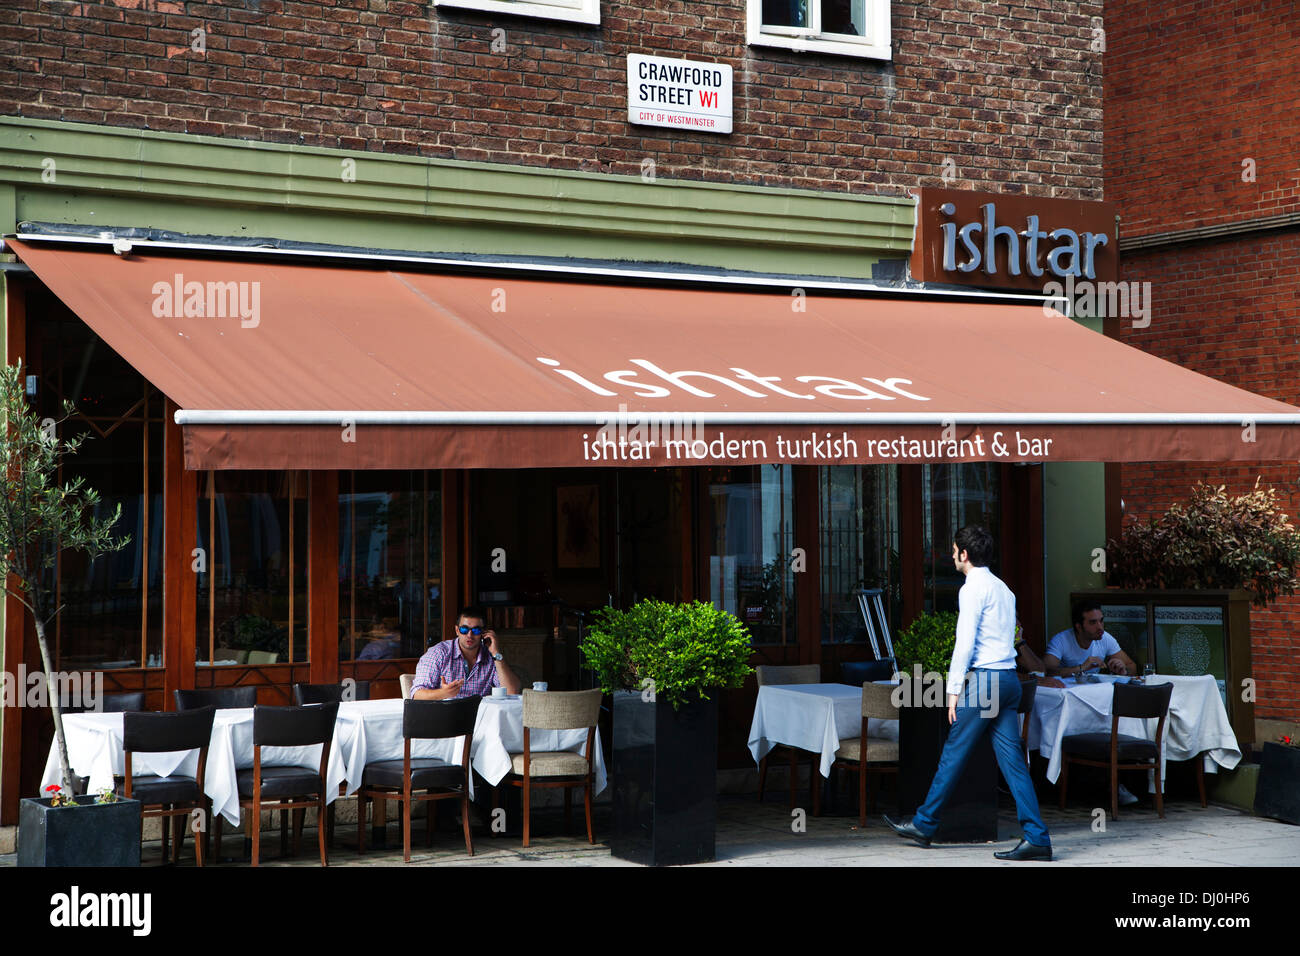 Ishtar Turkish Restaurant, Crawford Street, Marylebone, London, England, UK, Europe Stock Photo